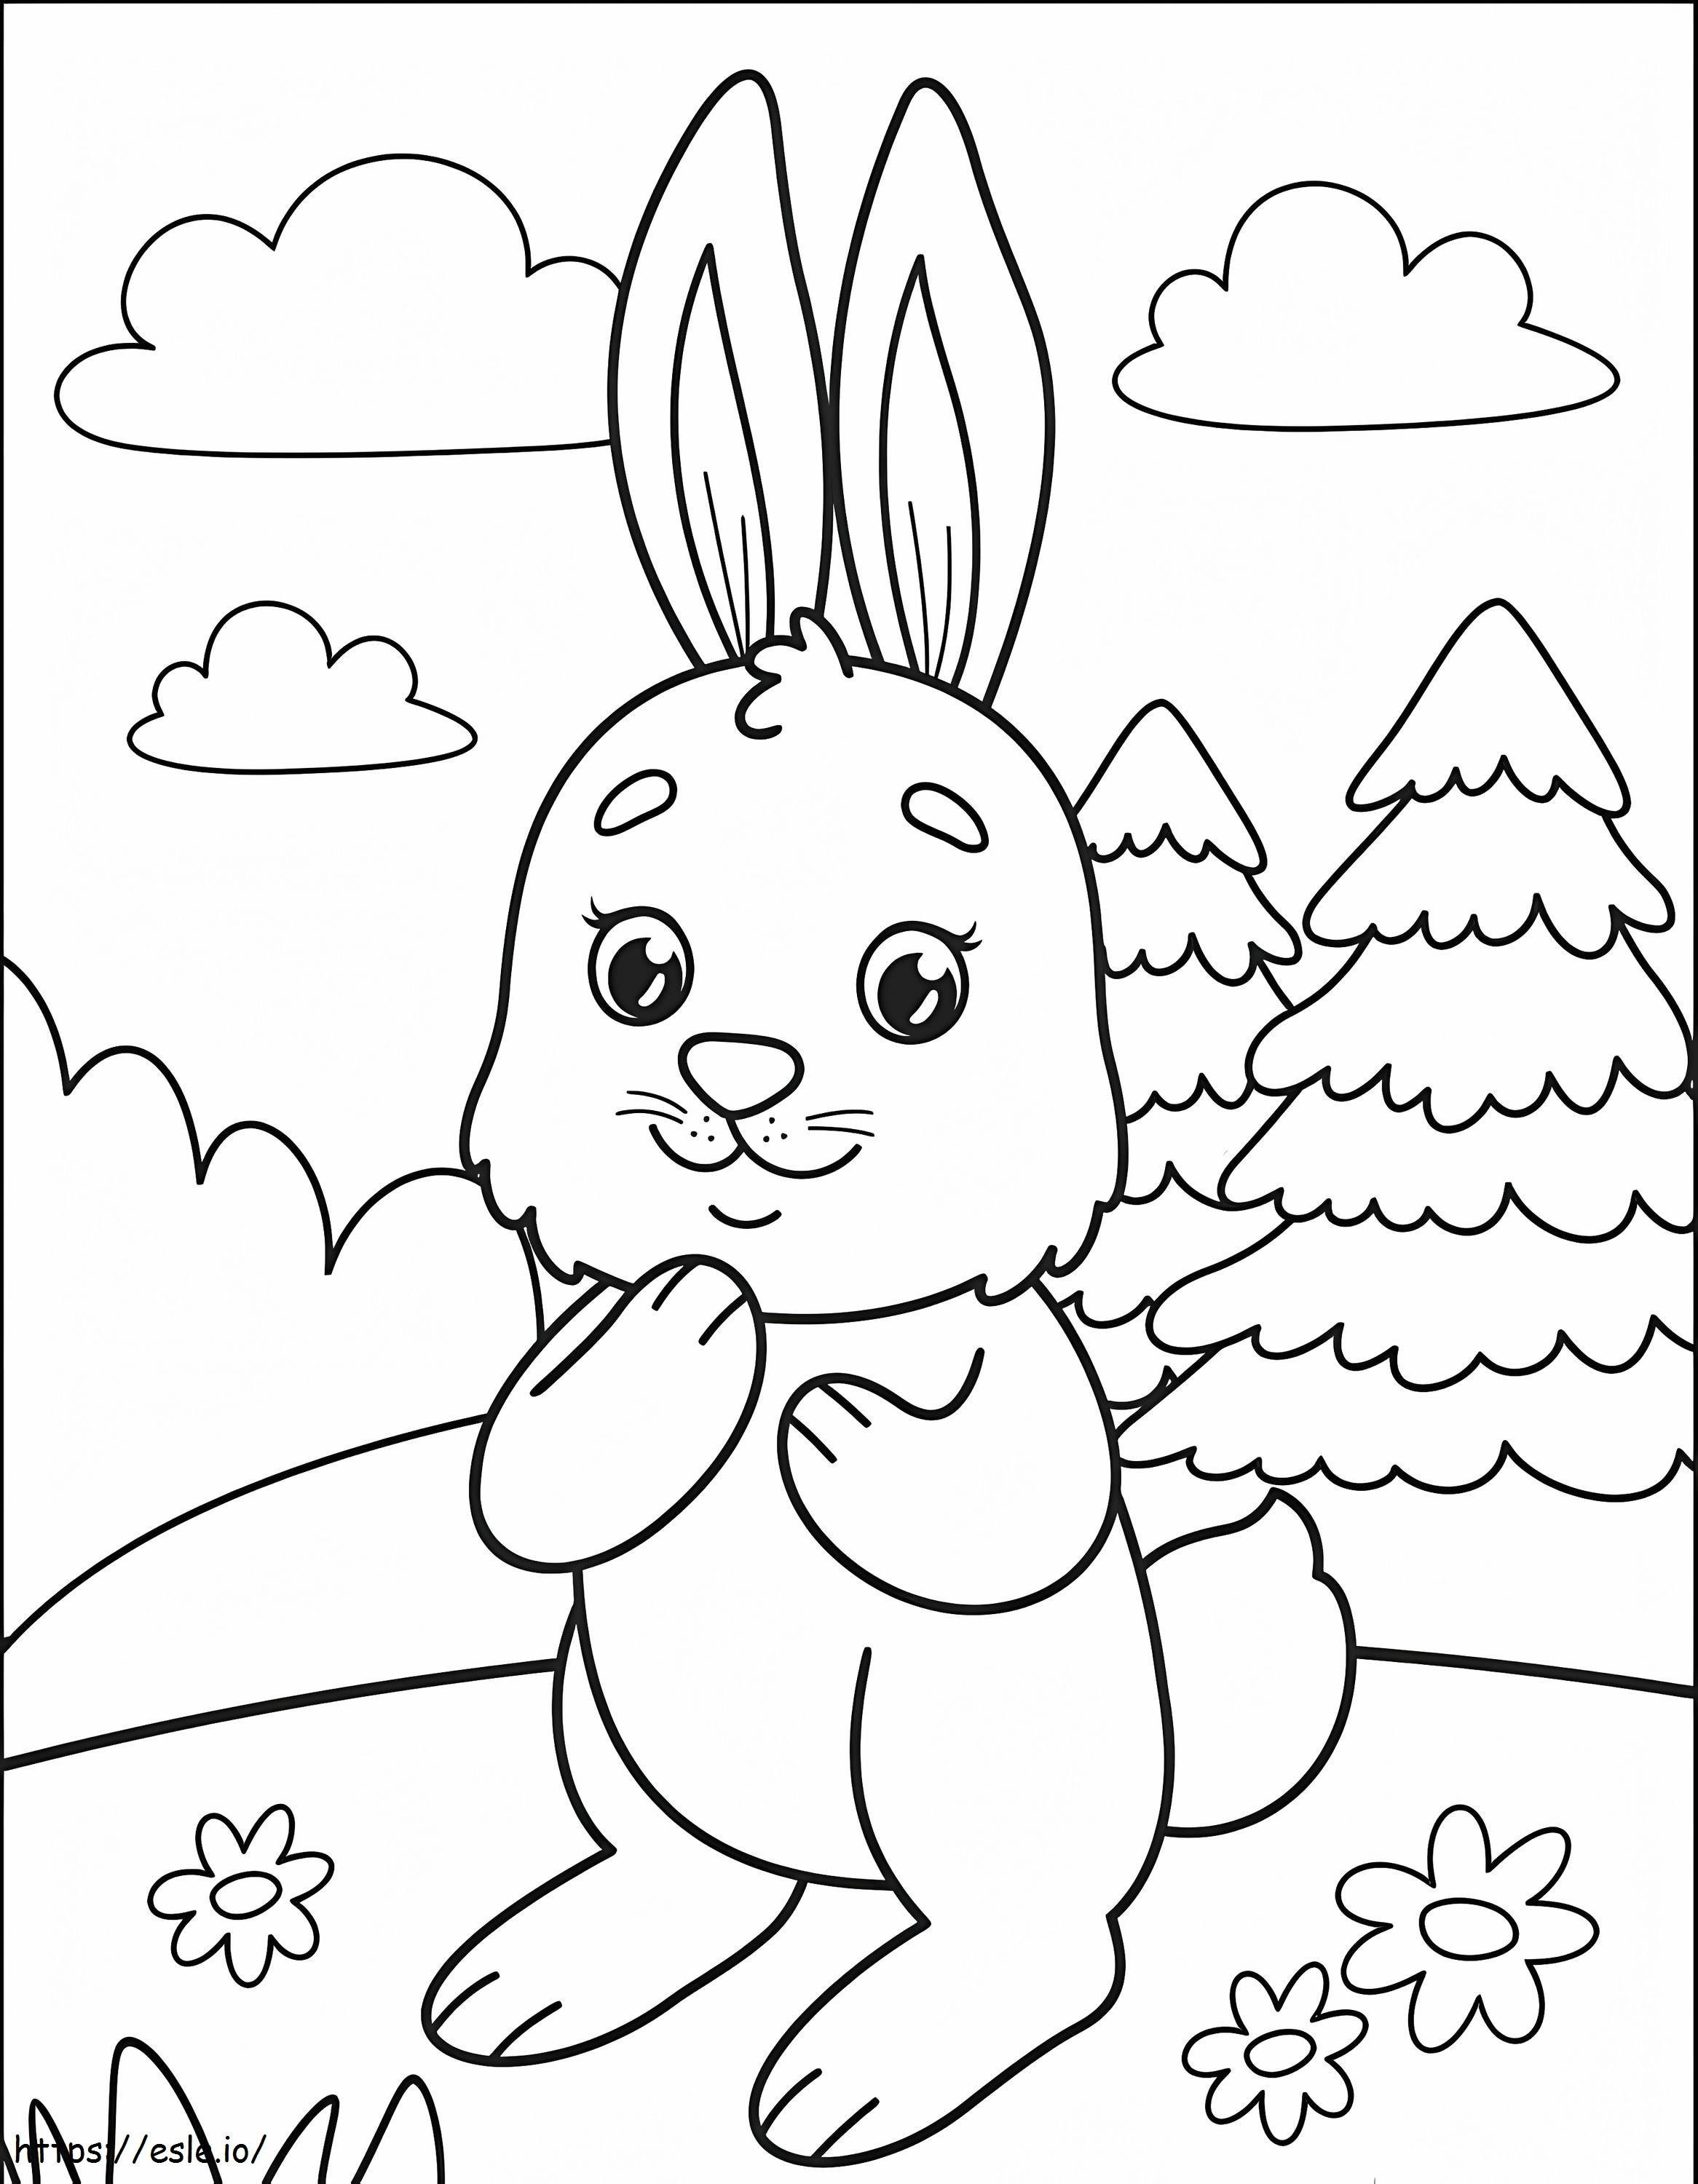 Coloriage Le lapin est mignon à imprimer dessin